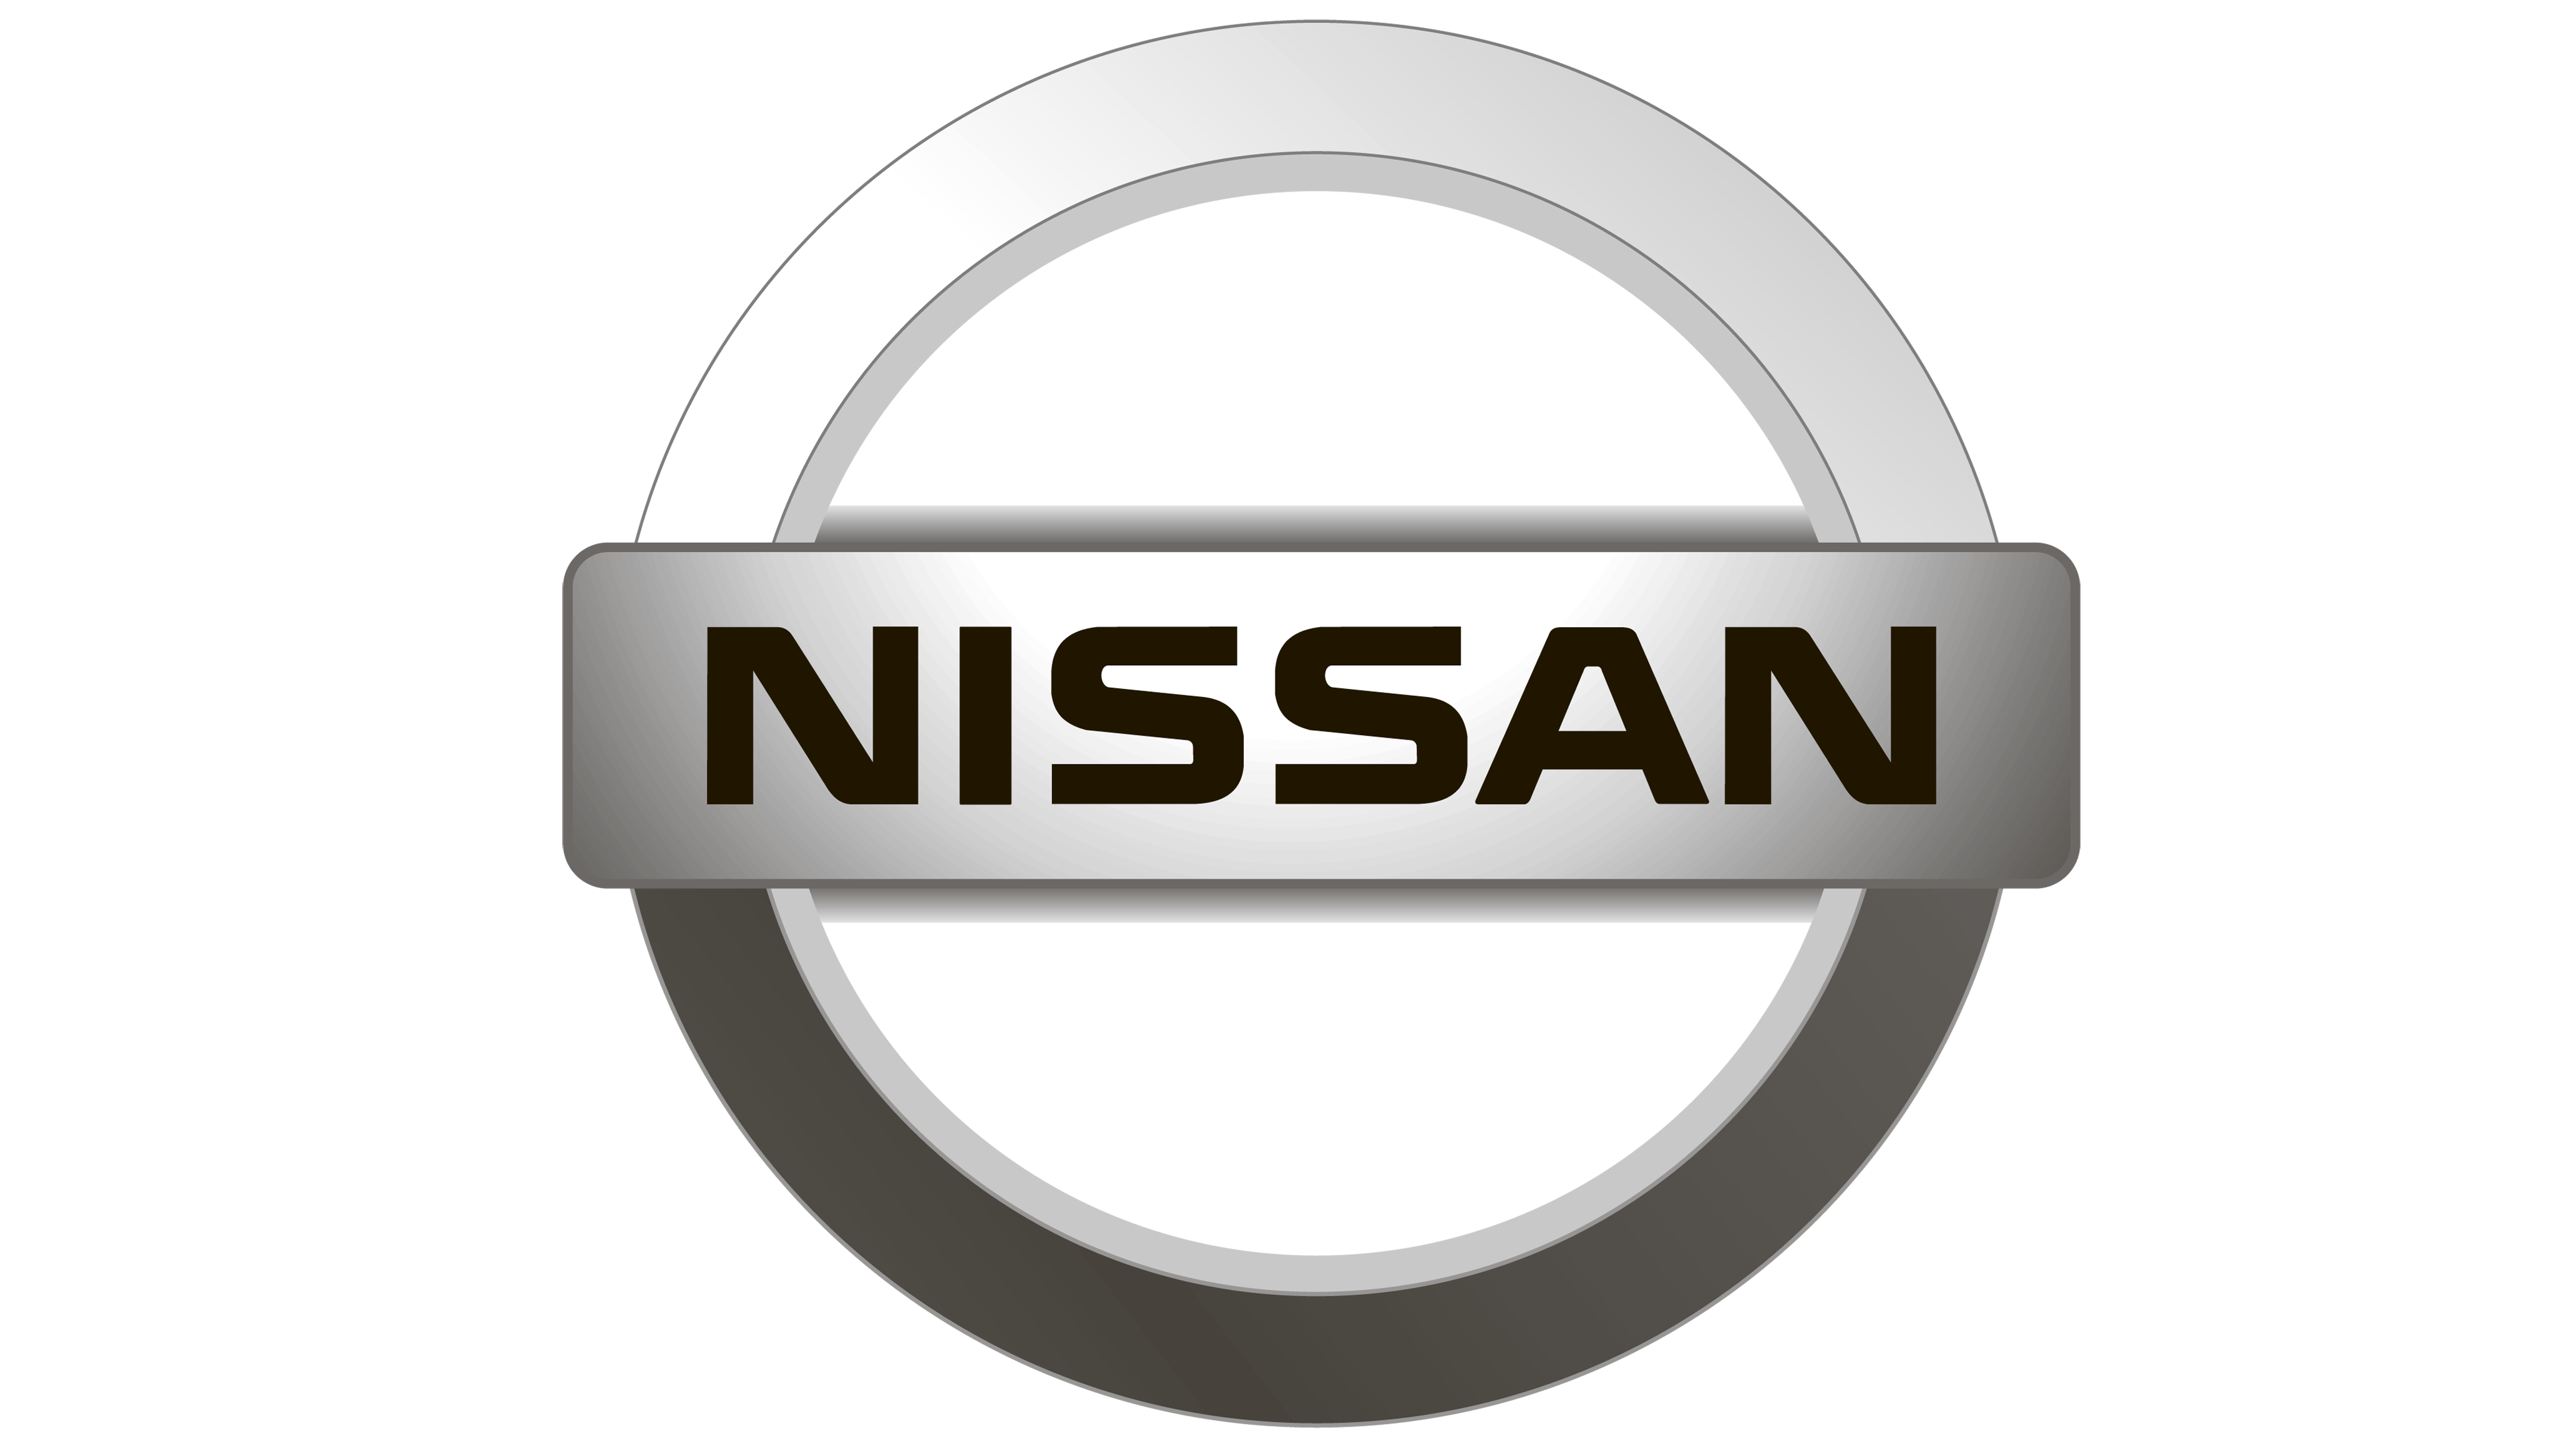 Nissan Motor - Ниссан Мотор Рус - Ниссан Мануфэкчуринг Рус - японский автопроизводитель